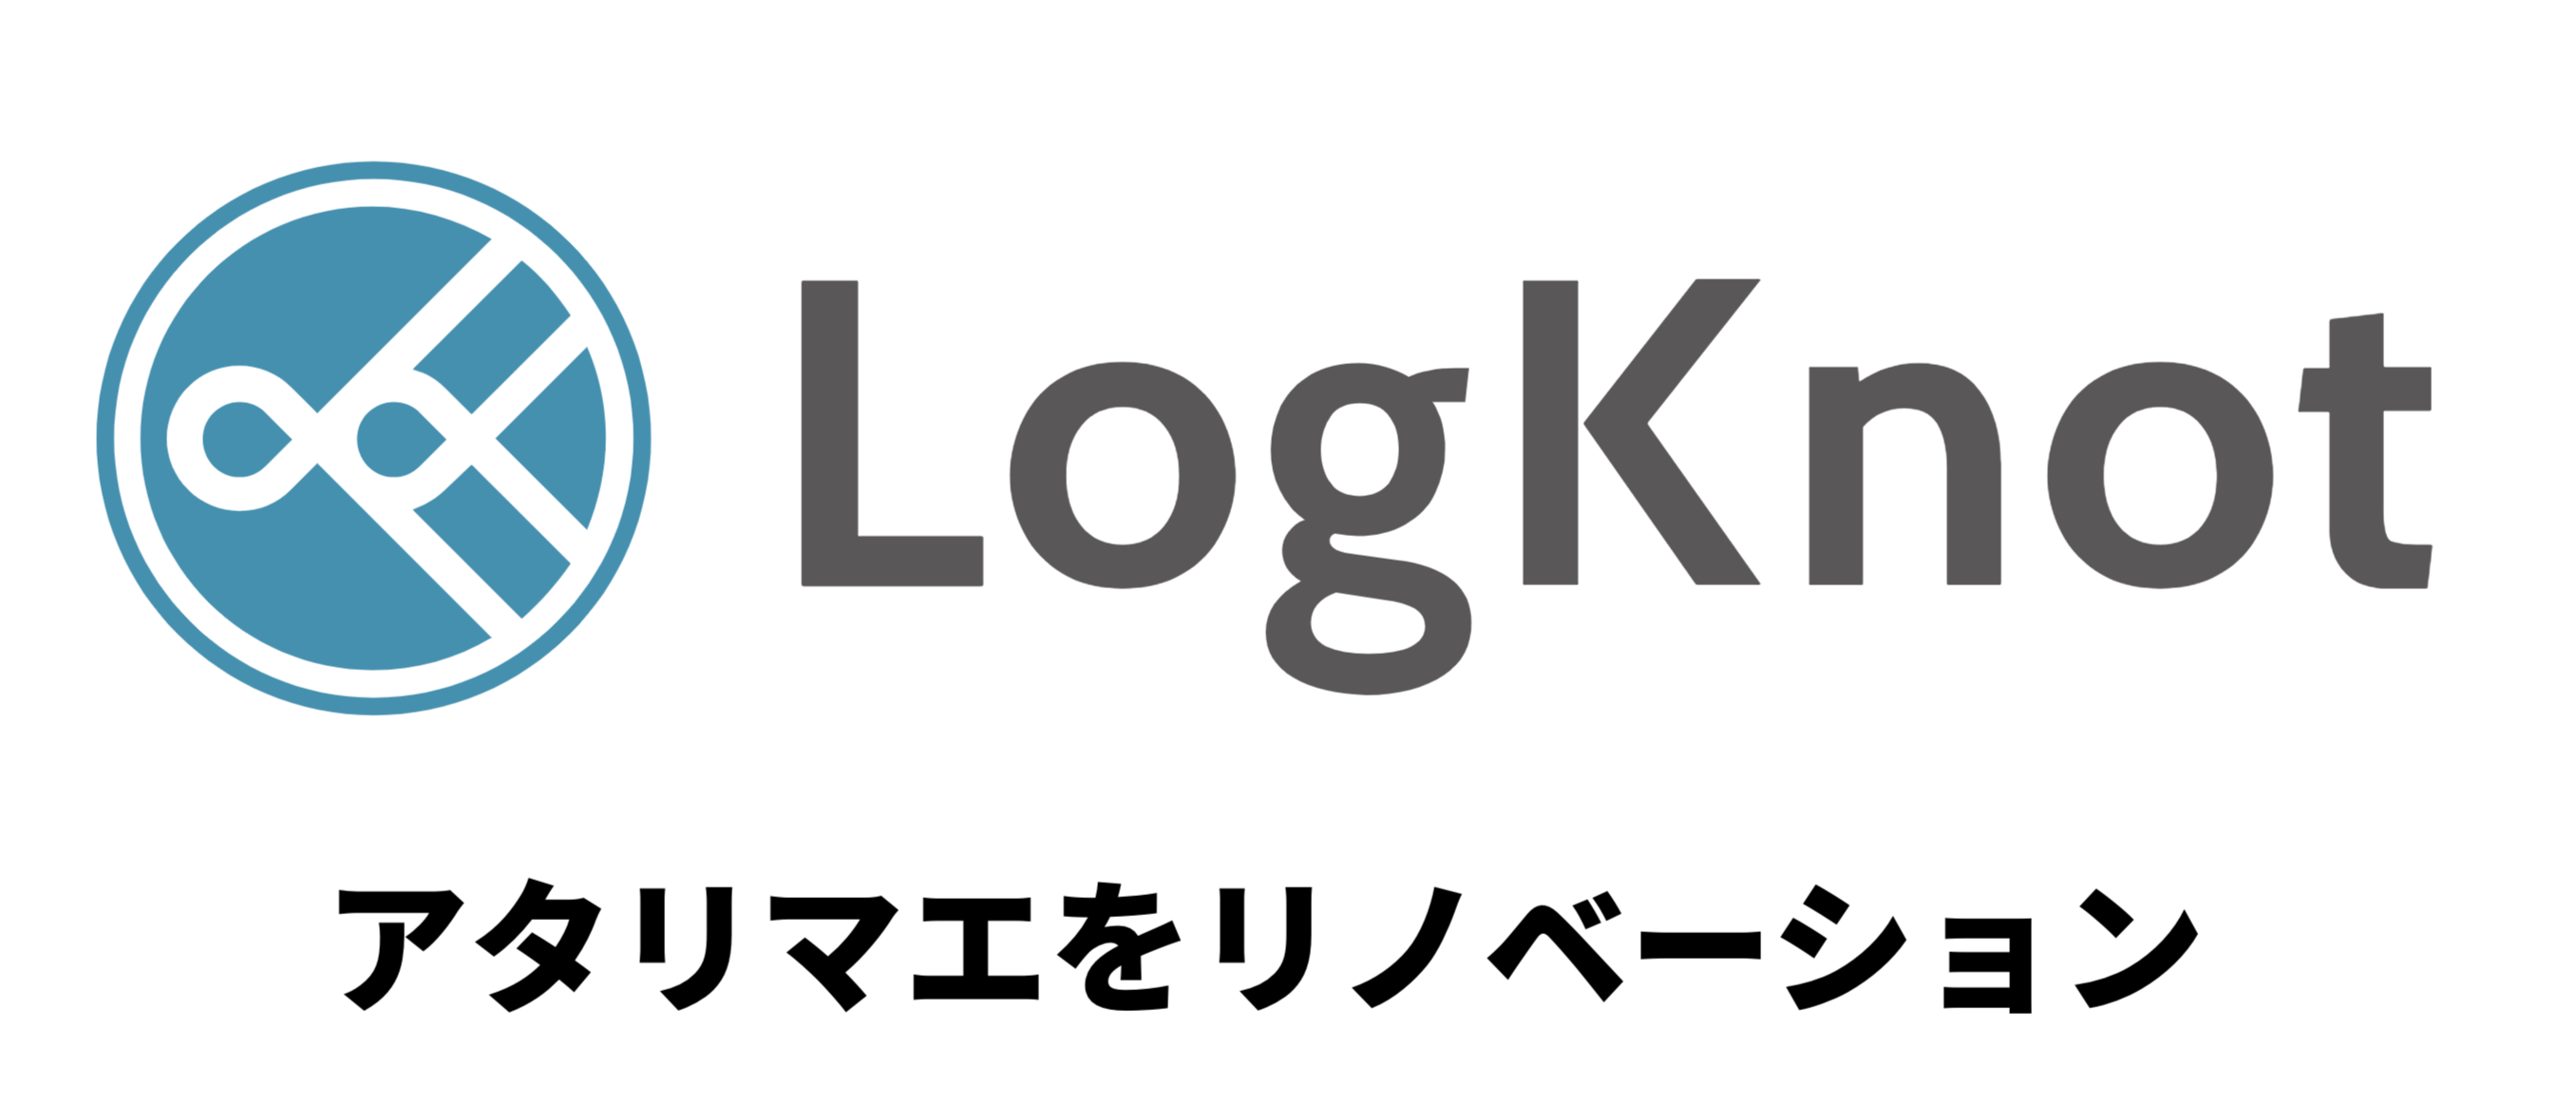 LogKnot株式会社を設立いたしました。